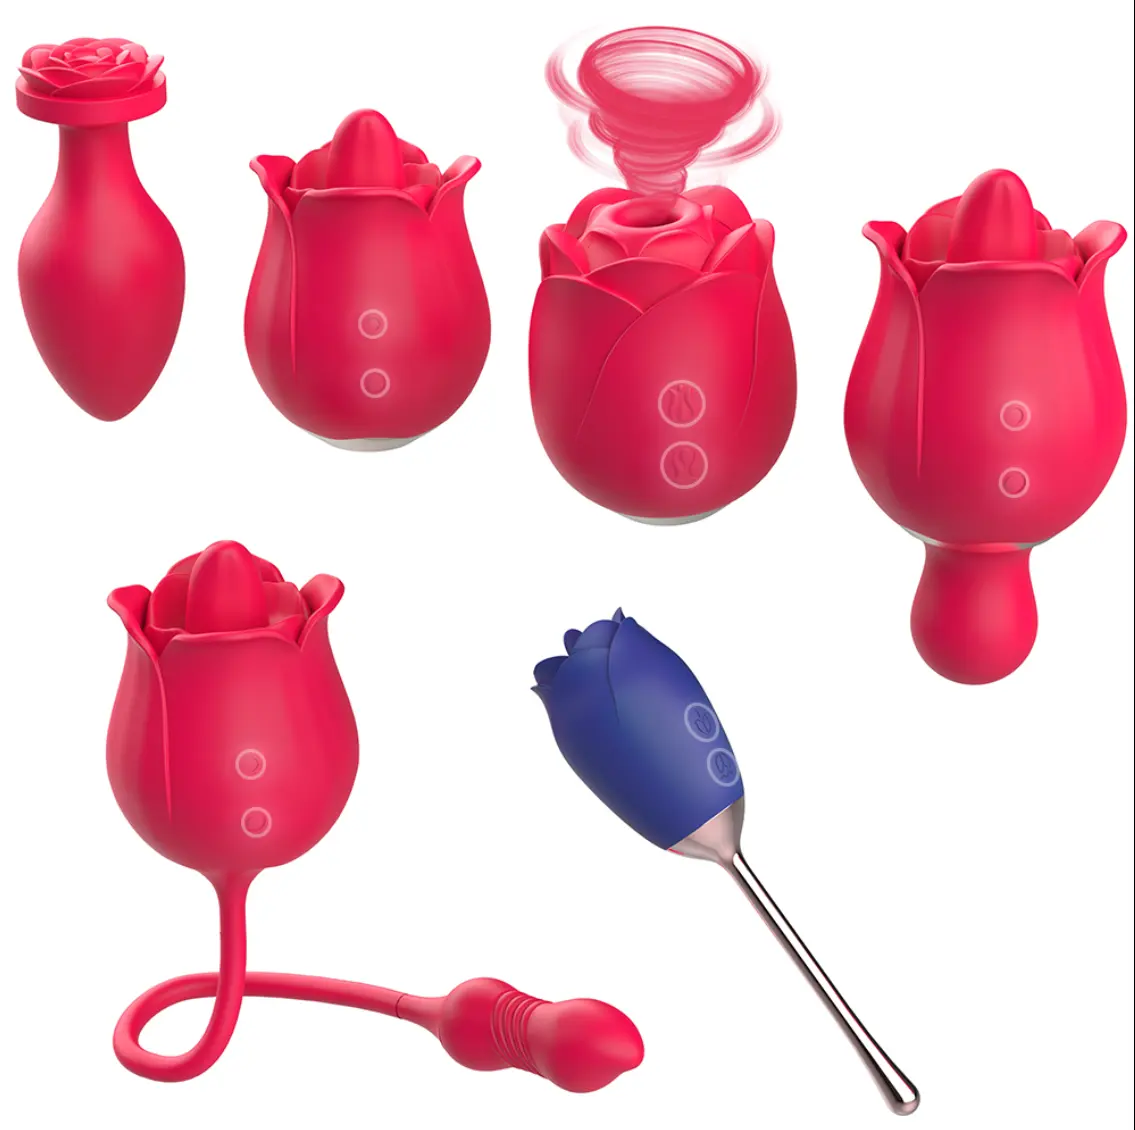 S-HANDE die rose sexspielzeug sexy sexspielzeug für frauen erwachsene sex rose vibrator saugen klitoris stimulator vibrator sexspielzeug für frauen